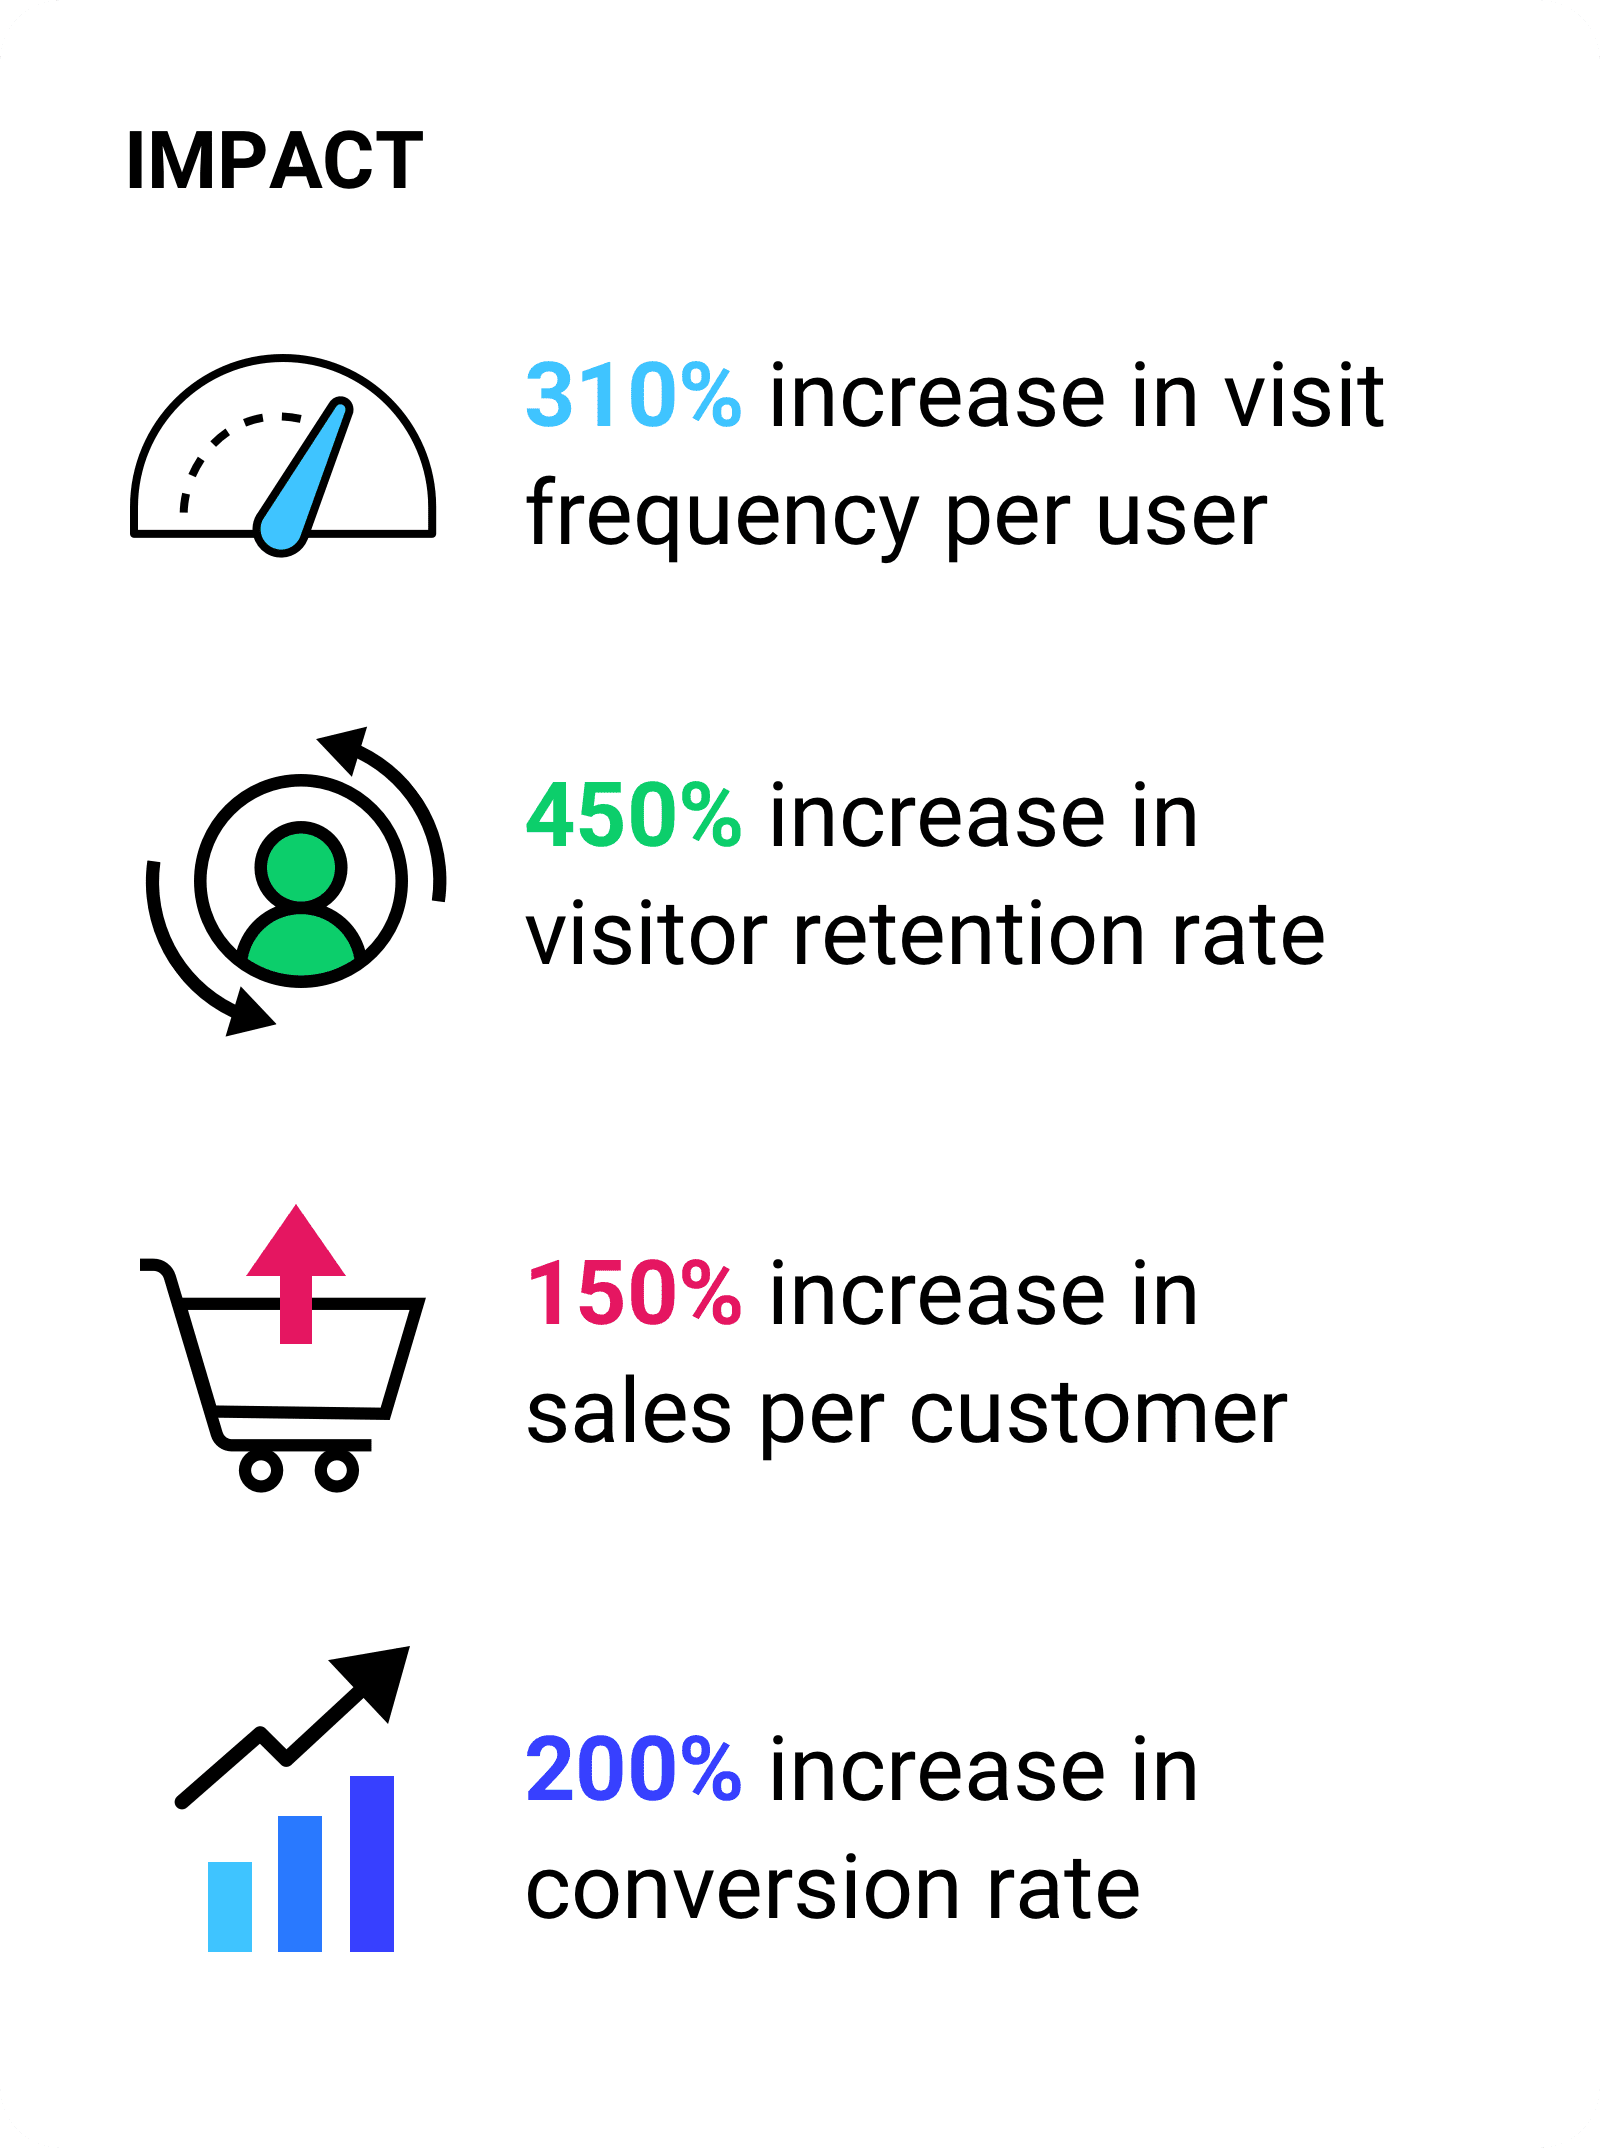 ユーザーあたりのアクセス頻度が 310% 増加ユーザー維持率が 450% 向上。顧客あたりの売上が 150% 増加し、コンバージョン率が 200% 増加。